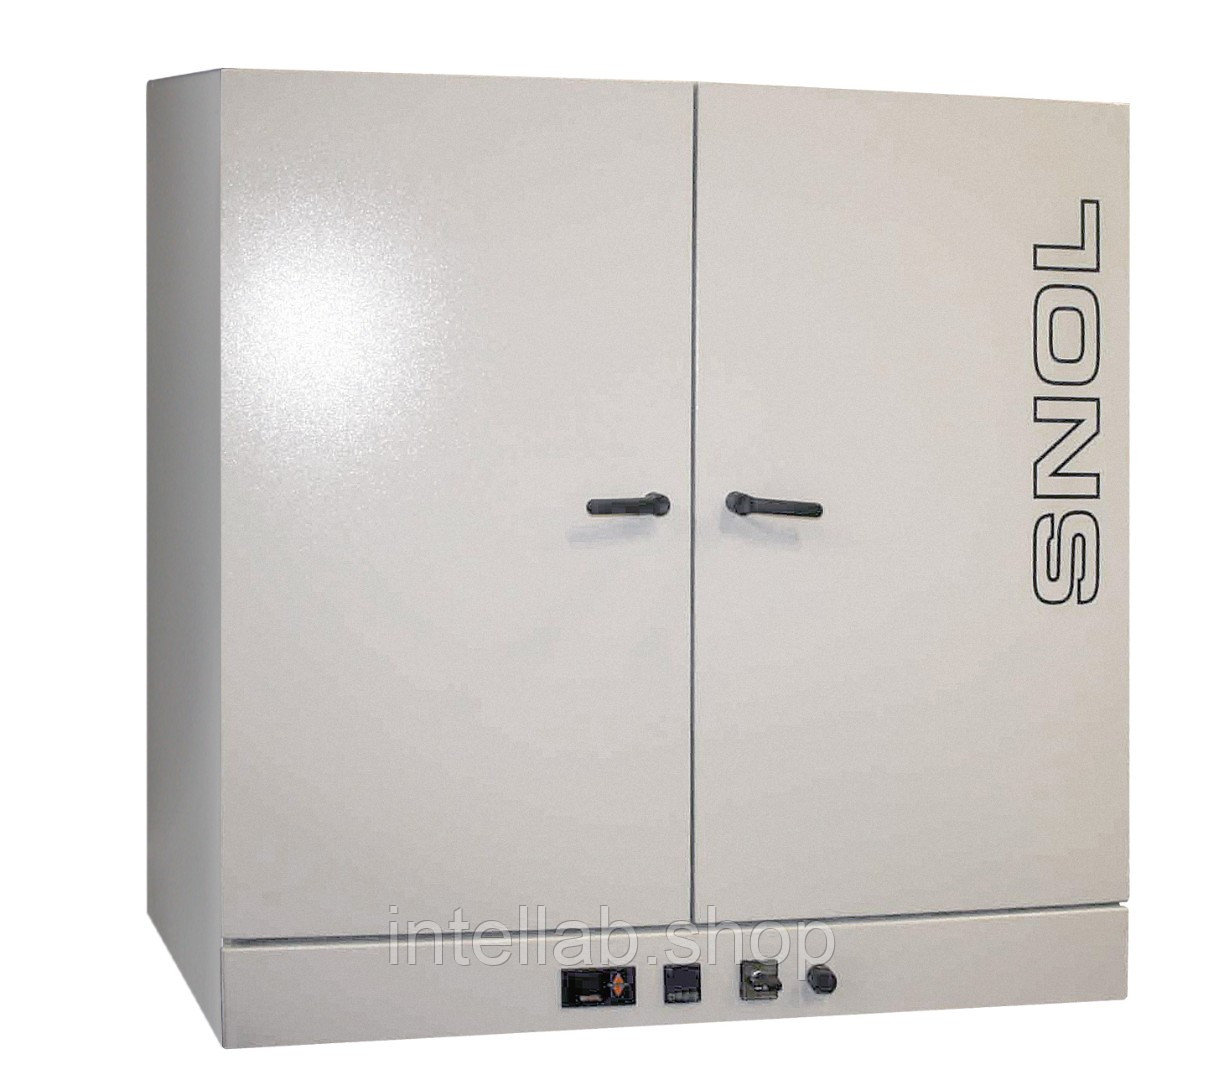 Электропечь сопротивления низкотемпературная лабораторная (сушильный шкаф), тип SNOL, модель 420/300 (LSN 41